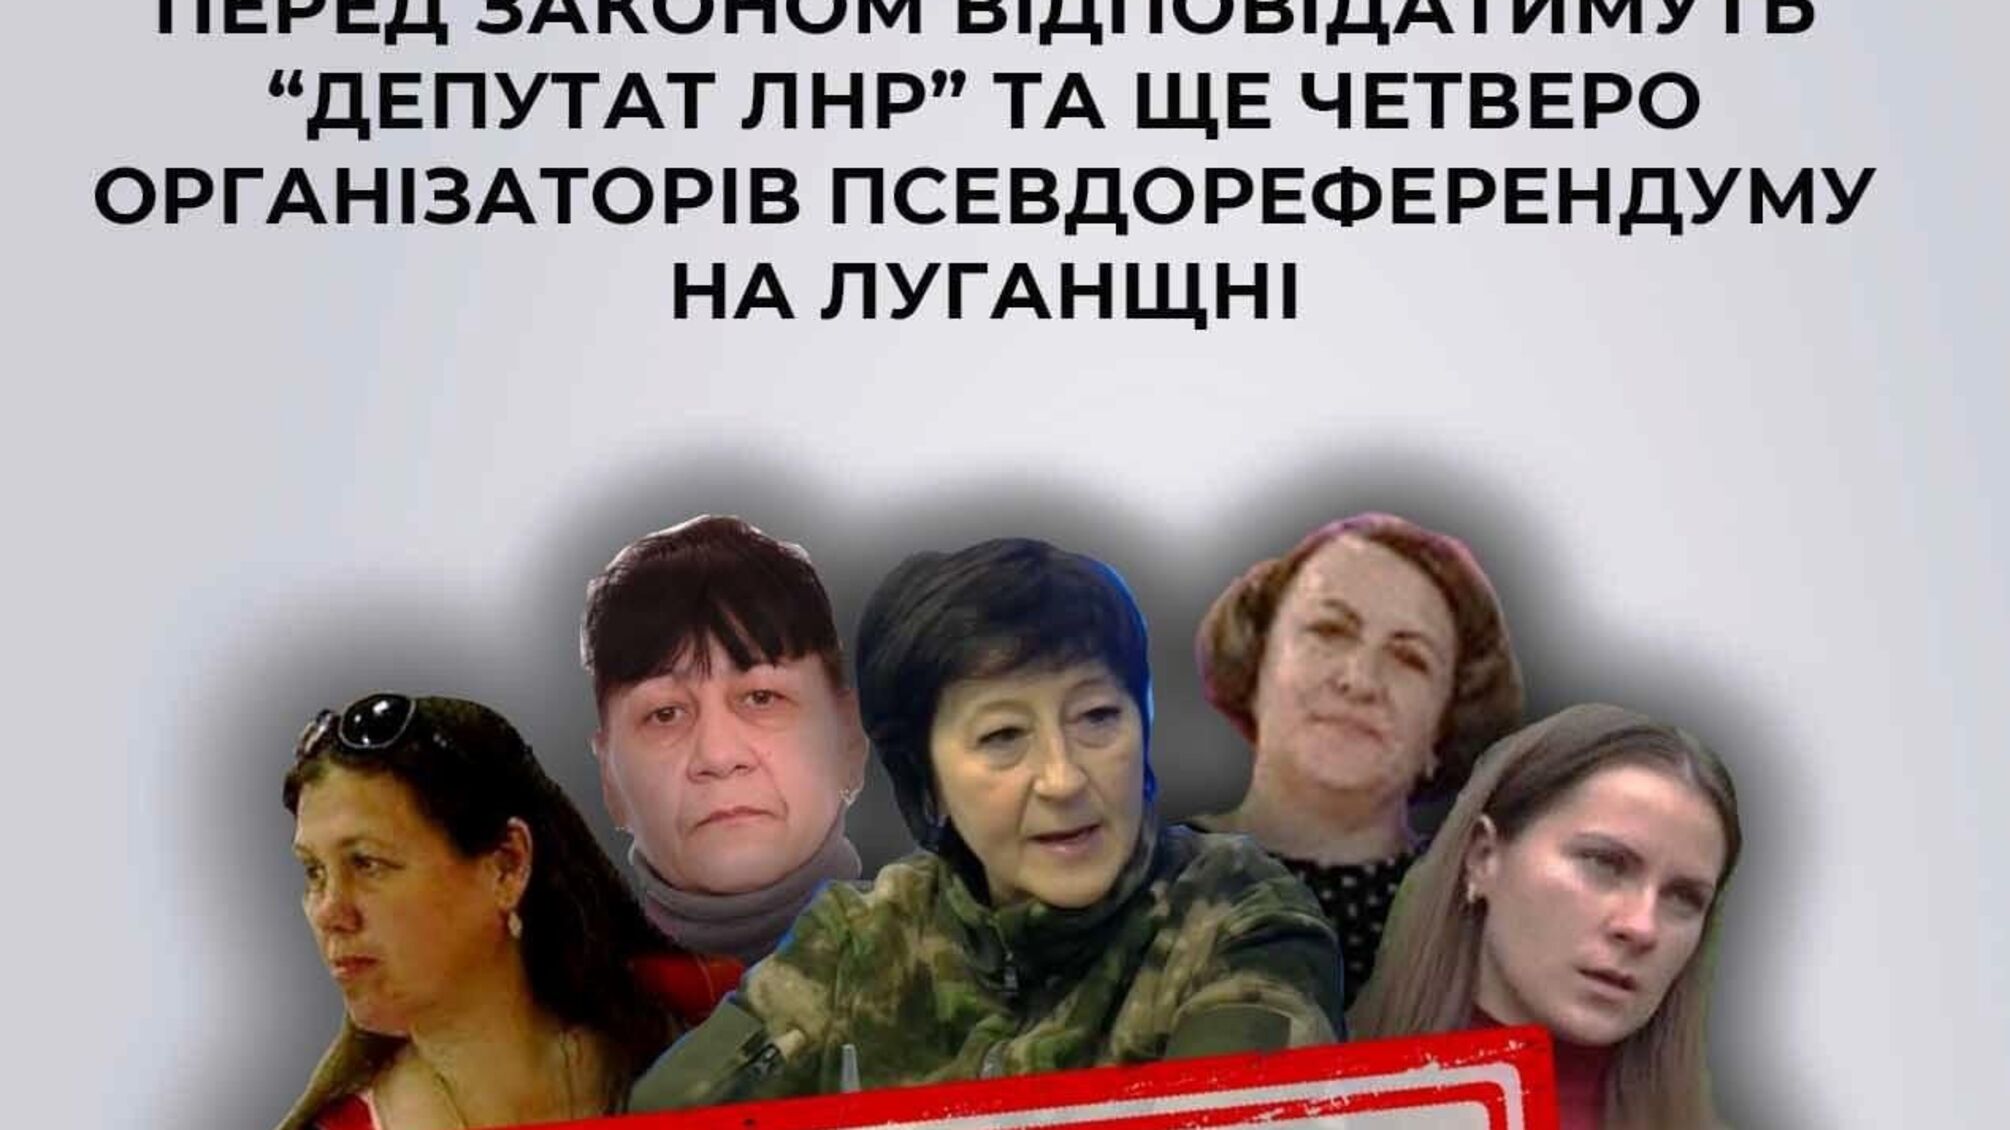  Засуджено пʼятьох колаборантів:  «депутат лнр» та четверо організаторів псевдореферендуму на Луганщині